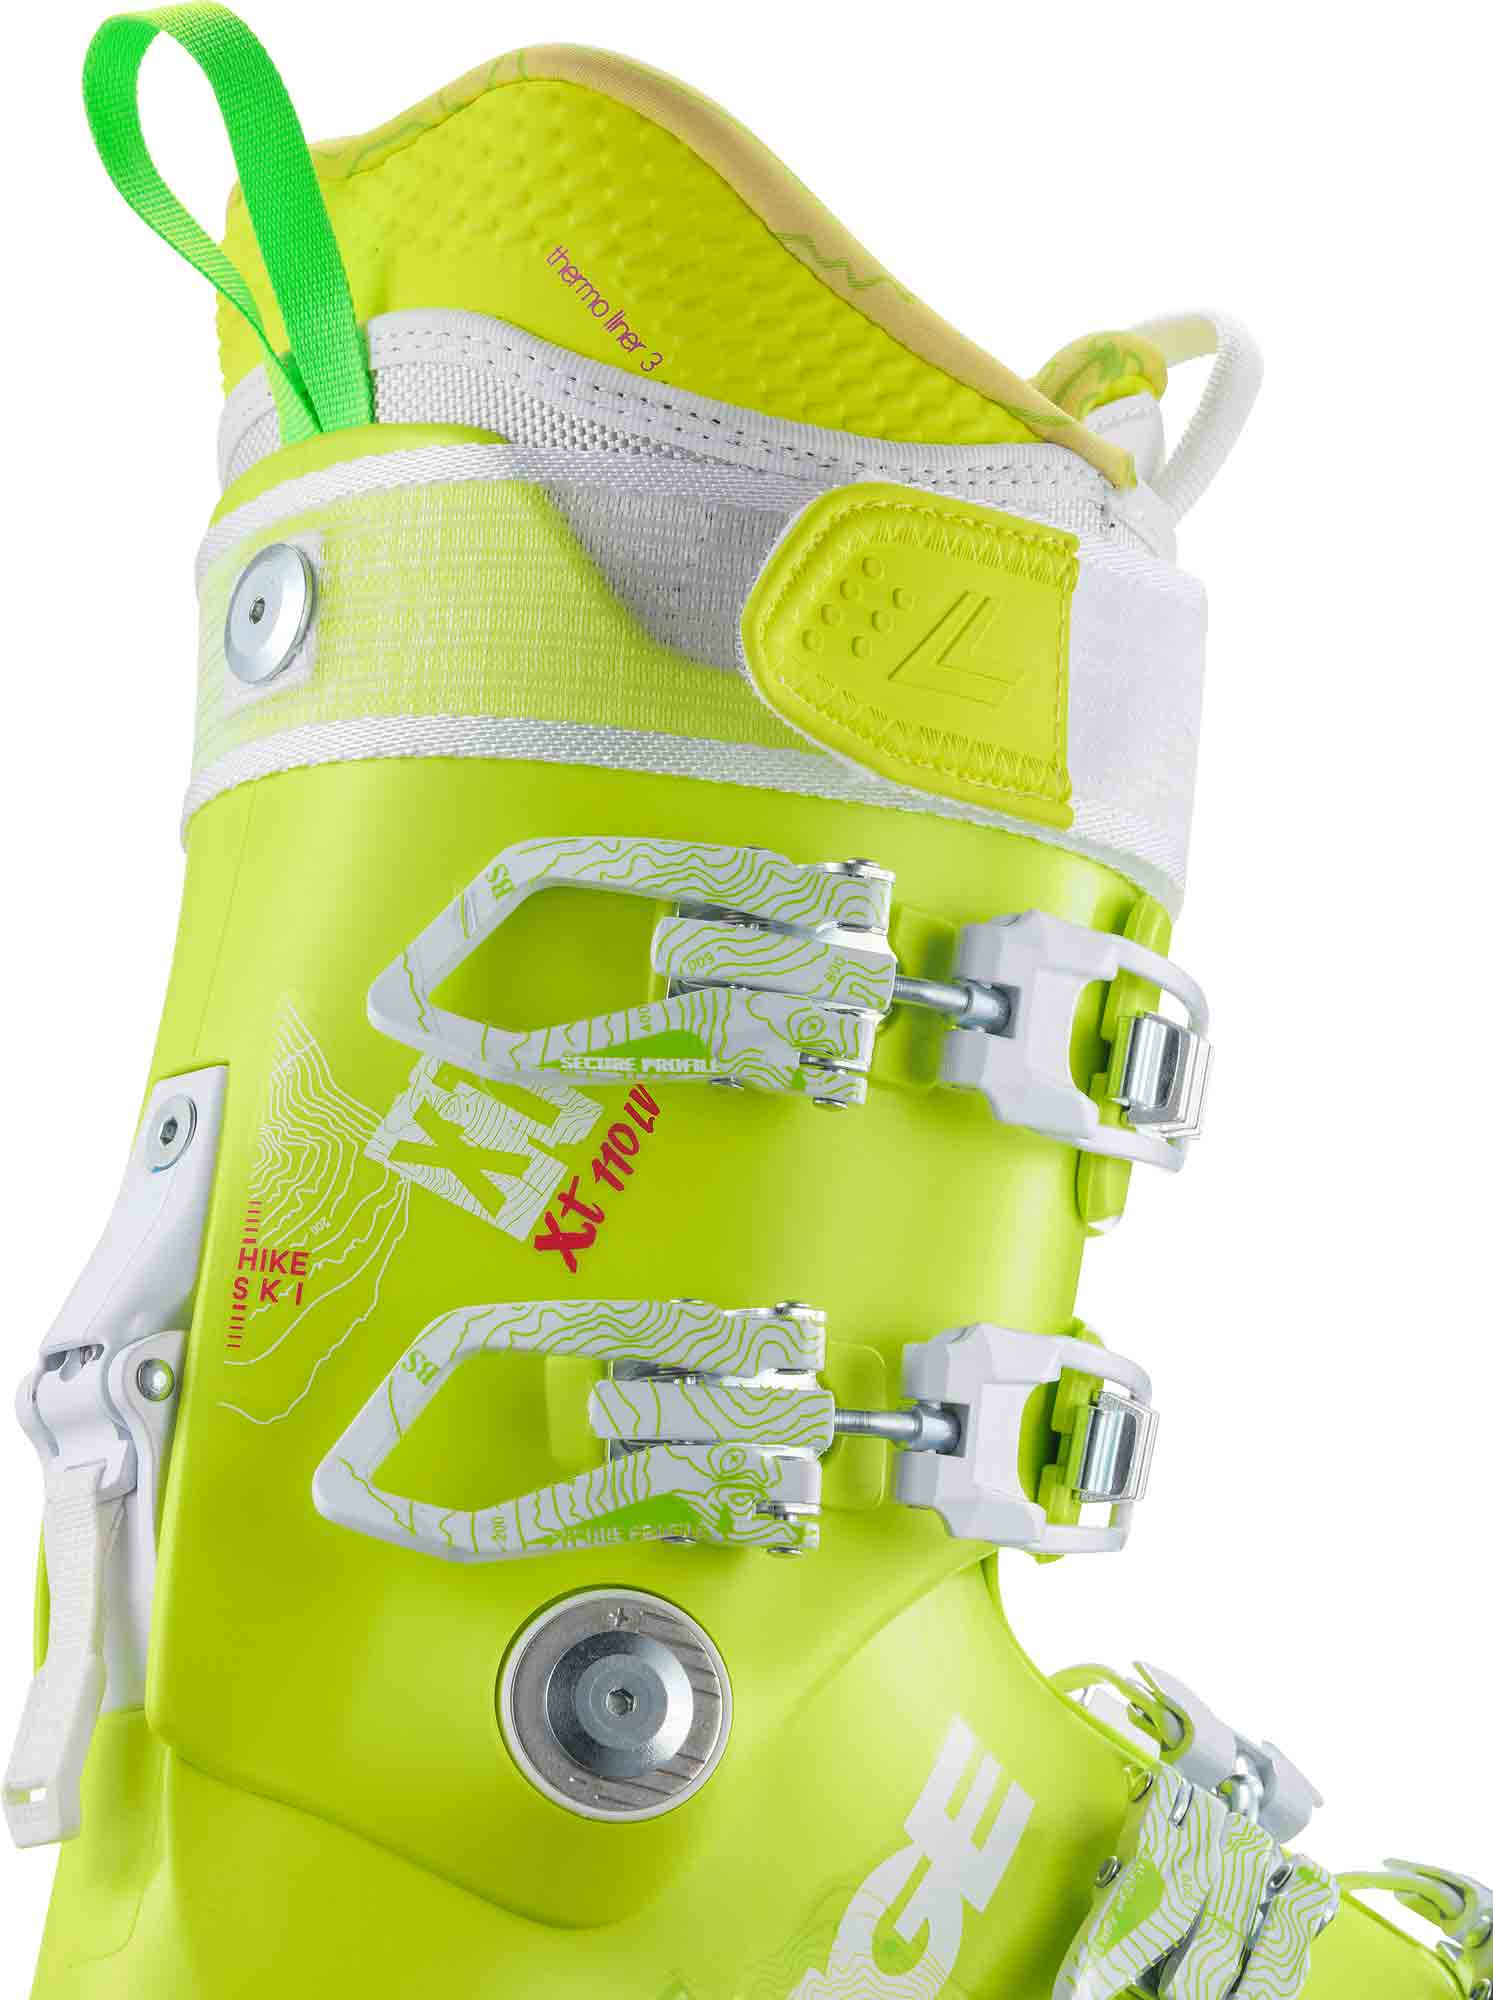 Lange XT 110 LV W Women's Ski Boots 2015 — Vermont Ski and Sport